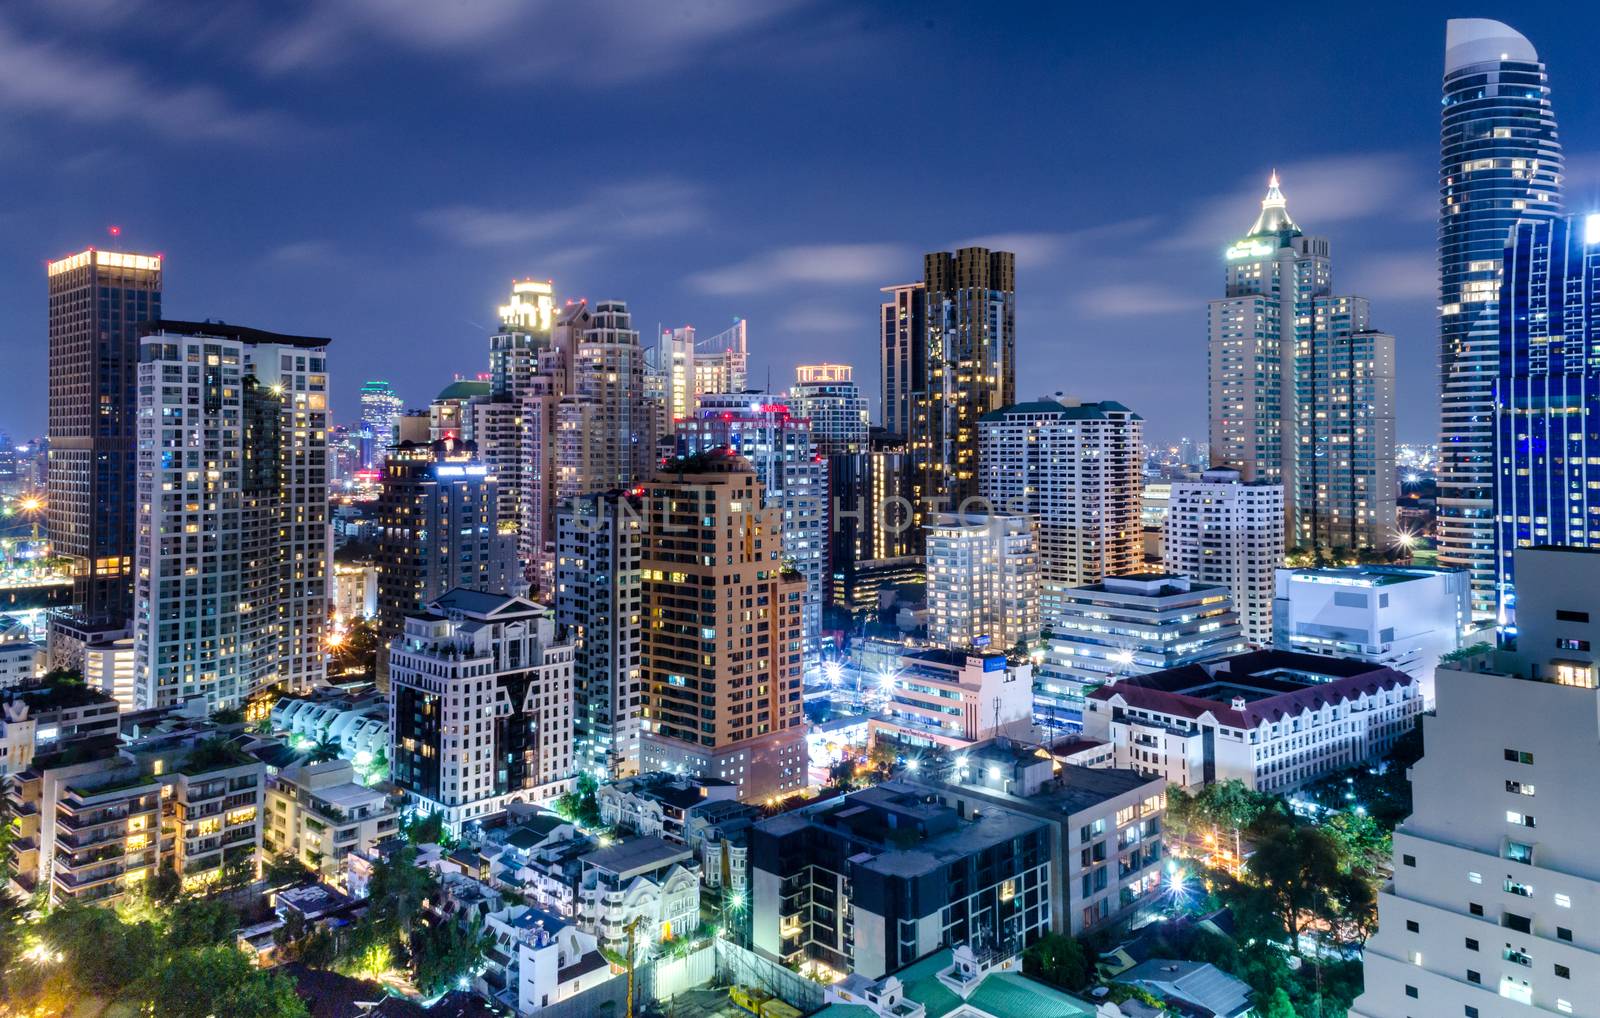 Editorial: Bangkok City, Thailand, 30th March 2017. Bangkok City has city of business and communication in the night at Siam Bangkok Thailand.